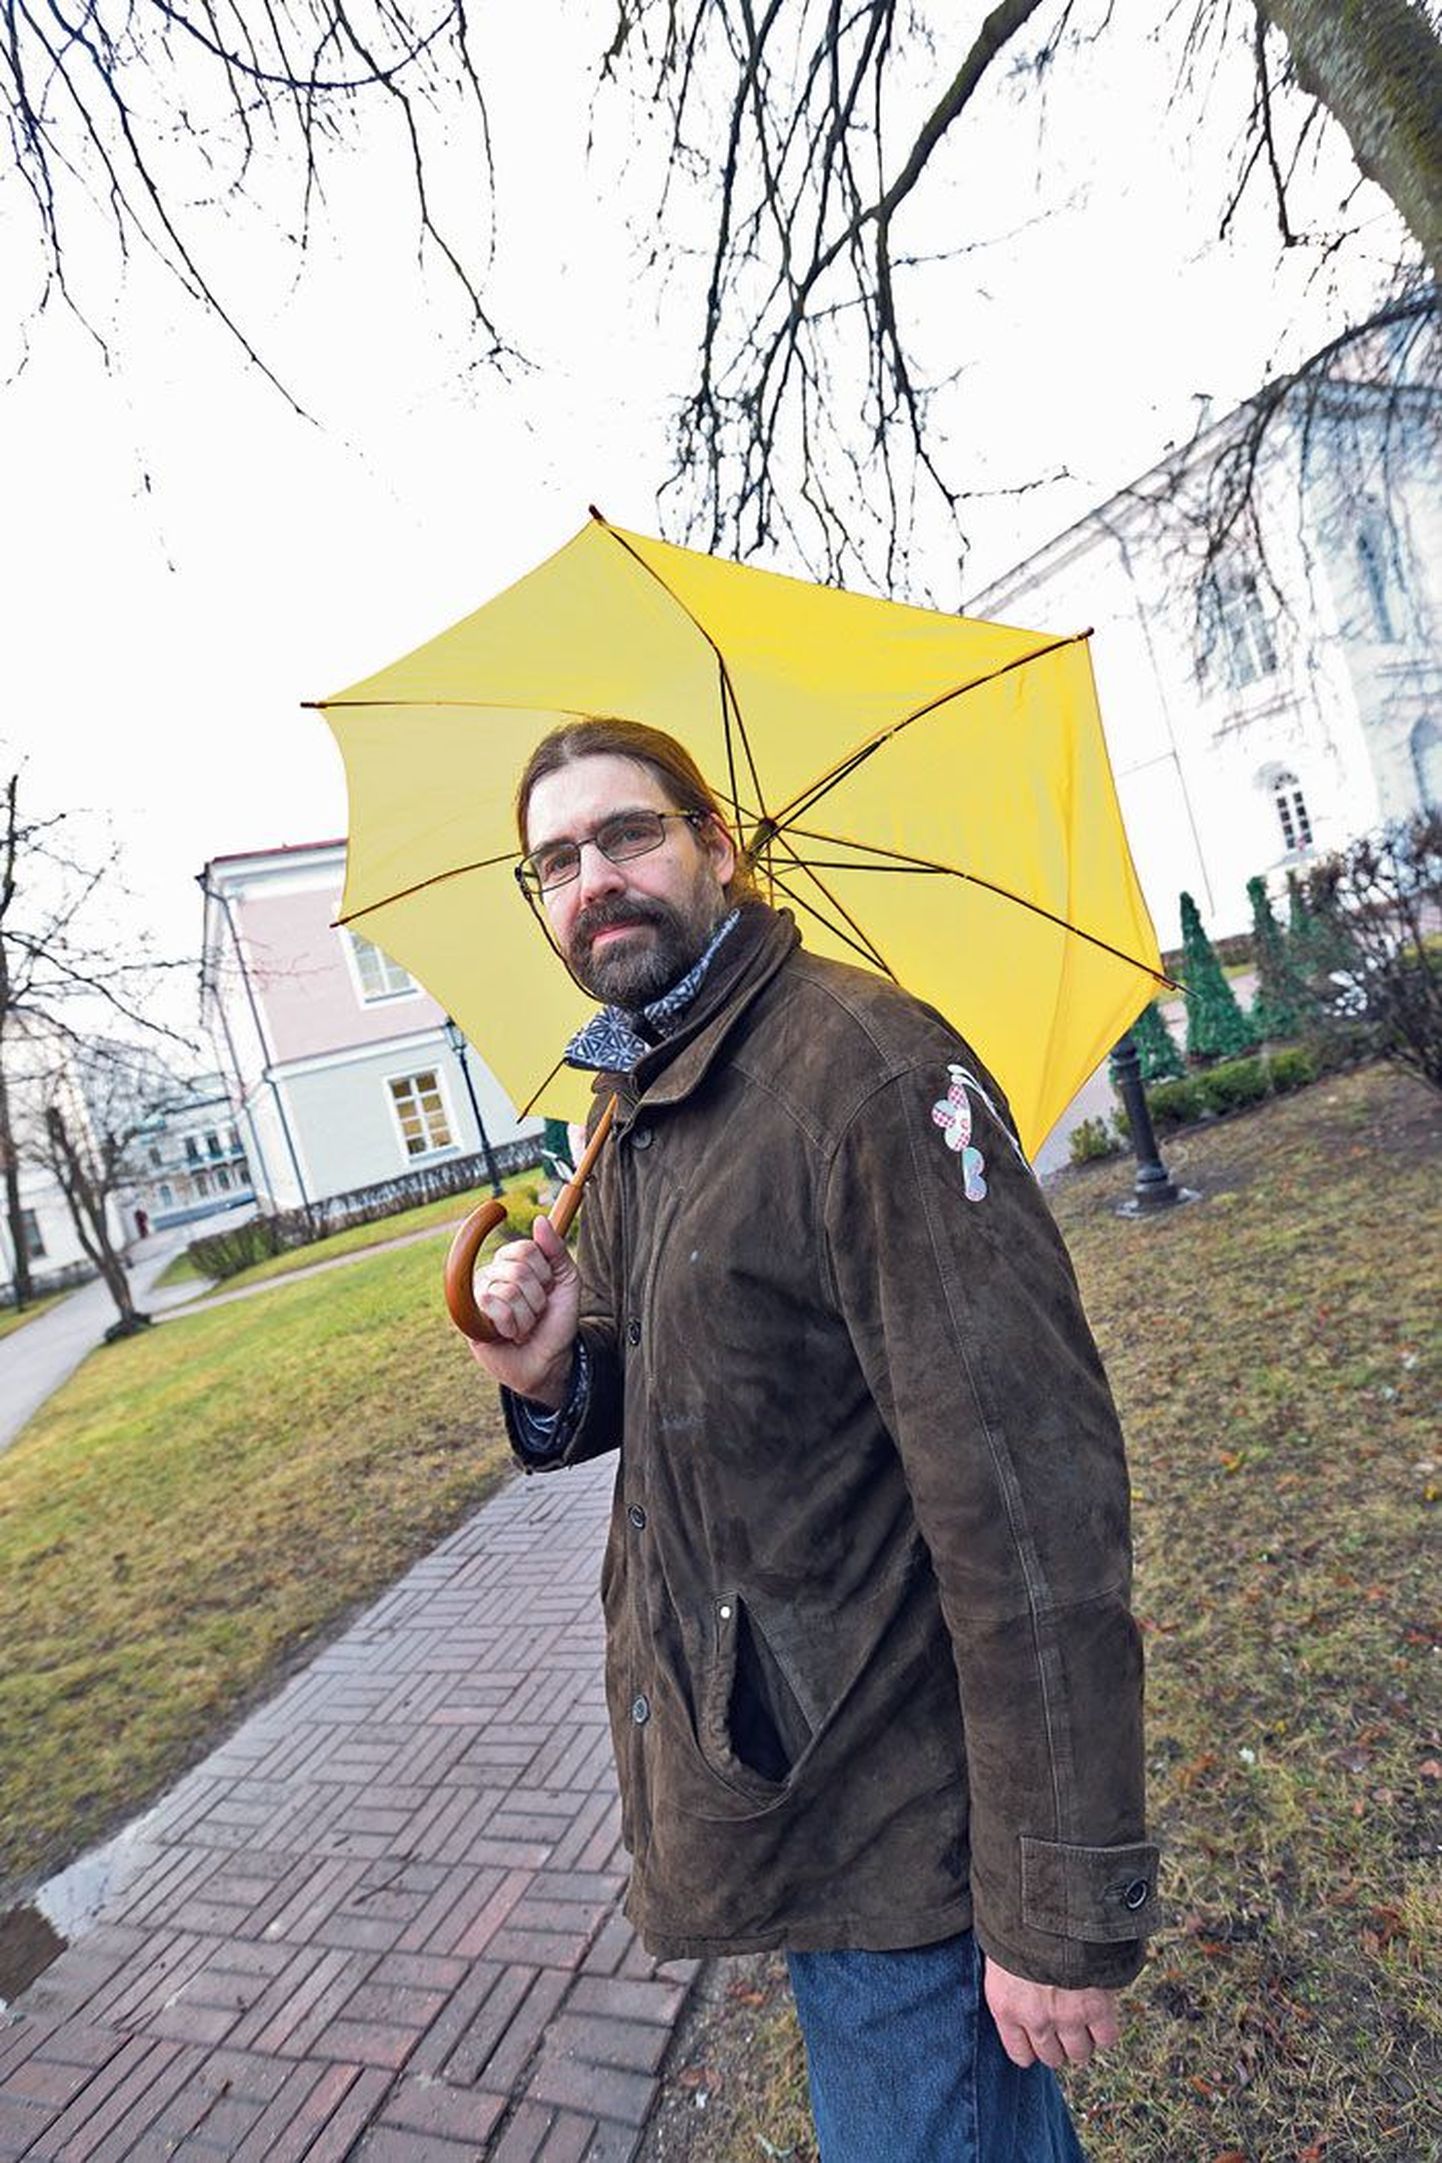 Pikaajalisi ilmaprognoose tegevale Tartu ülikooli keskkonnafüüsikule Marko Kaasikule porine väheste soojakraadidega talv ei istu. Talle meeldib kontinentaalne kliima ehk püsiva külmaga talv ning kiire üleminek sügisest talve ja talvest kevadesse.